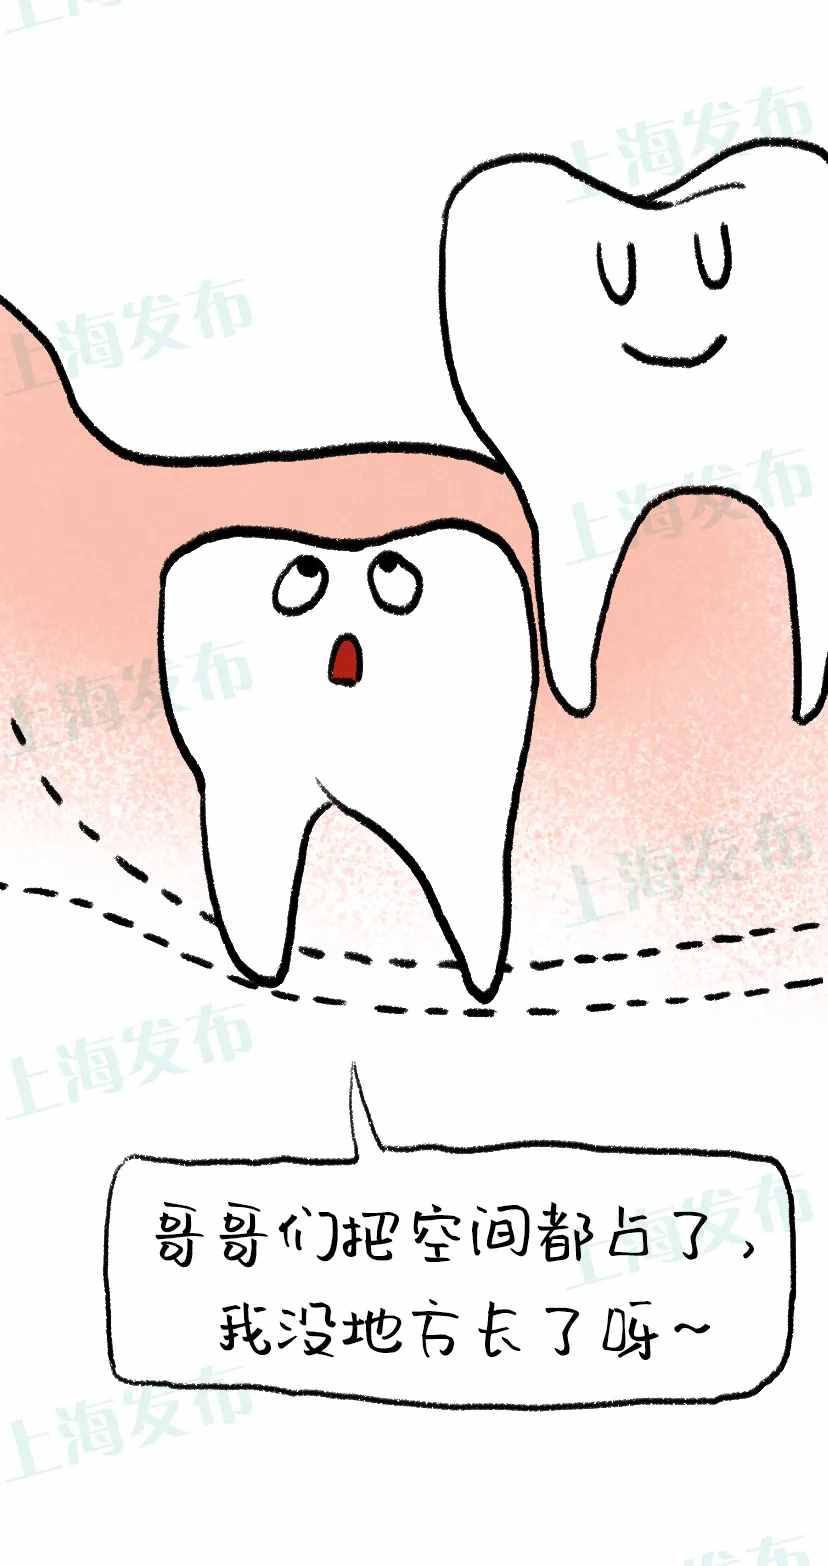 “尽根牙”是嘴巴里的潜伏者，为何会“一痛惊人”？拔还是不拔？